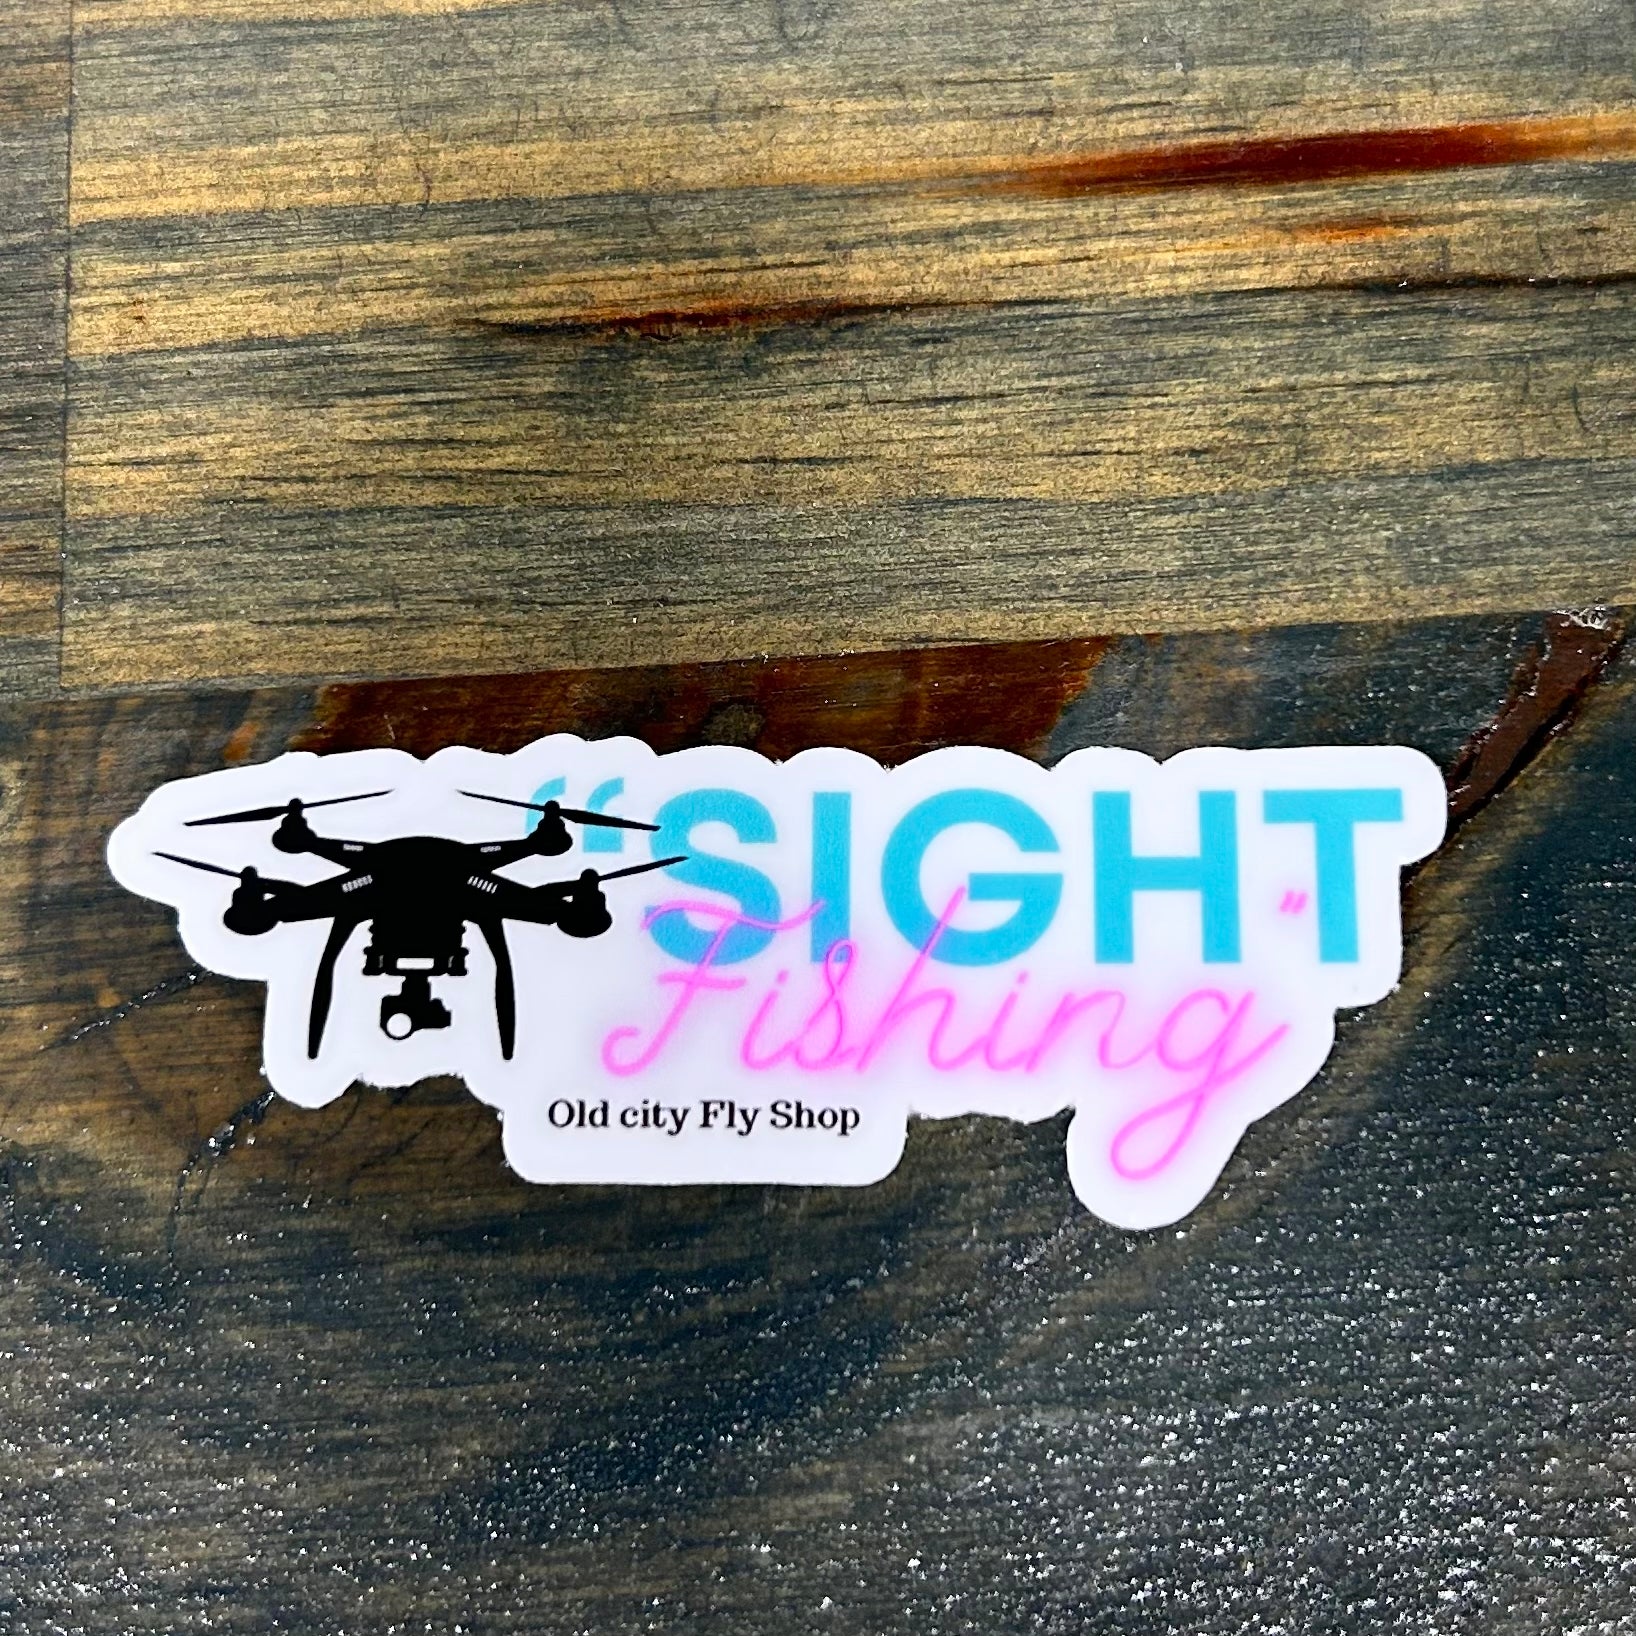 “Sight fishing” sticker